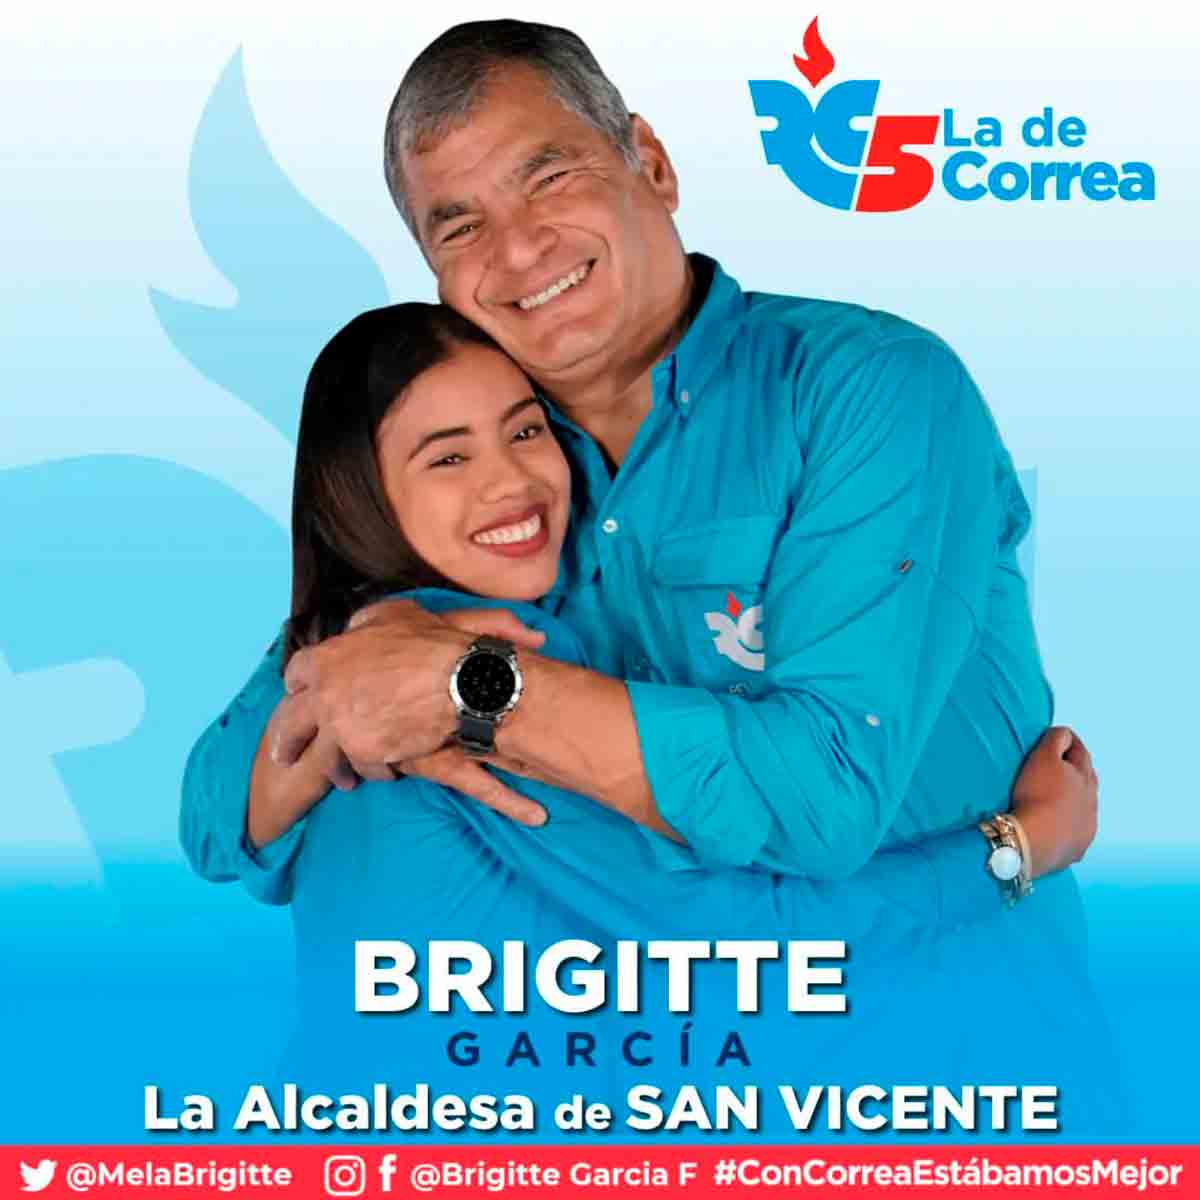 ブリギッテ・ガルシアは、元大統領ラファエル・コレアのRevolución Ciudadana党員でした